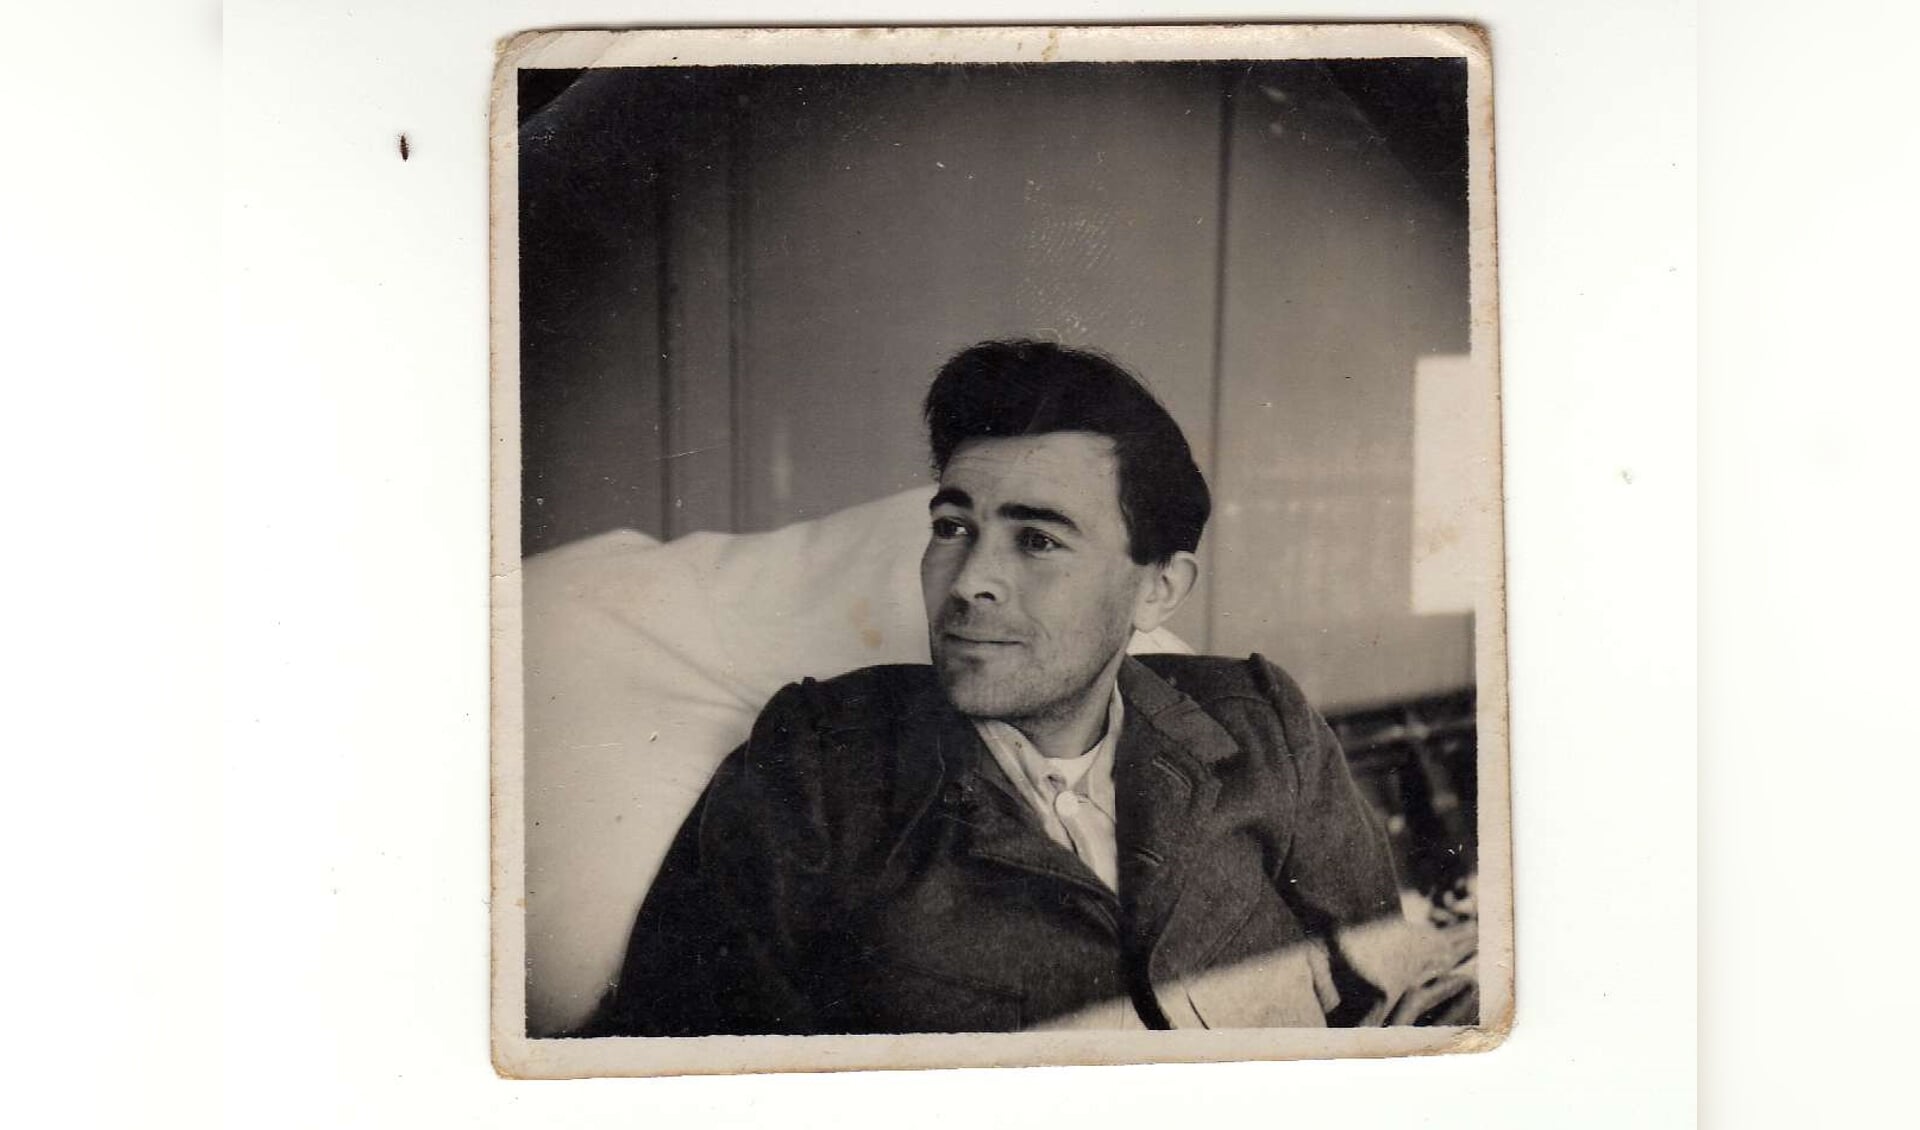 Donatien Hamon tijdens zijn verblijf in het Sint Joanna ziekenhuis in Goes in 1940.